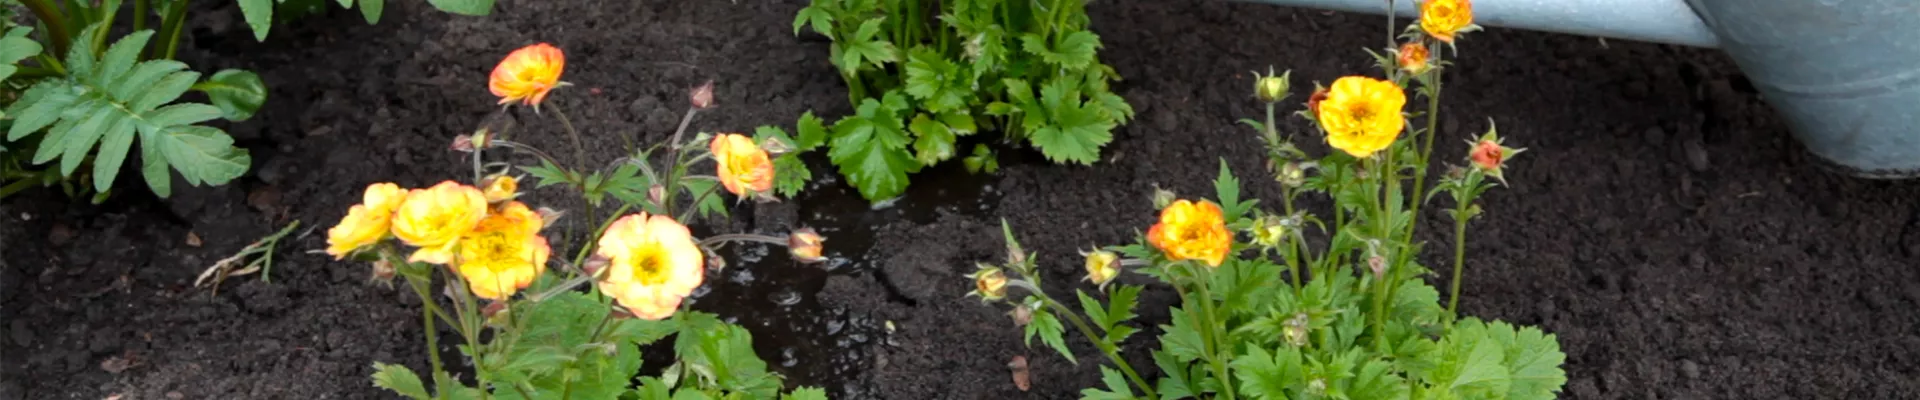 Nelkenwurz - Einpflanzen im Garten (thumbnail).jpg